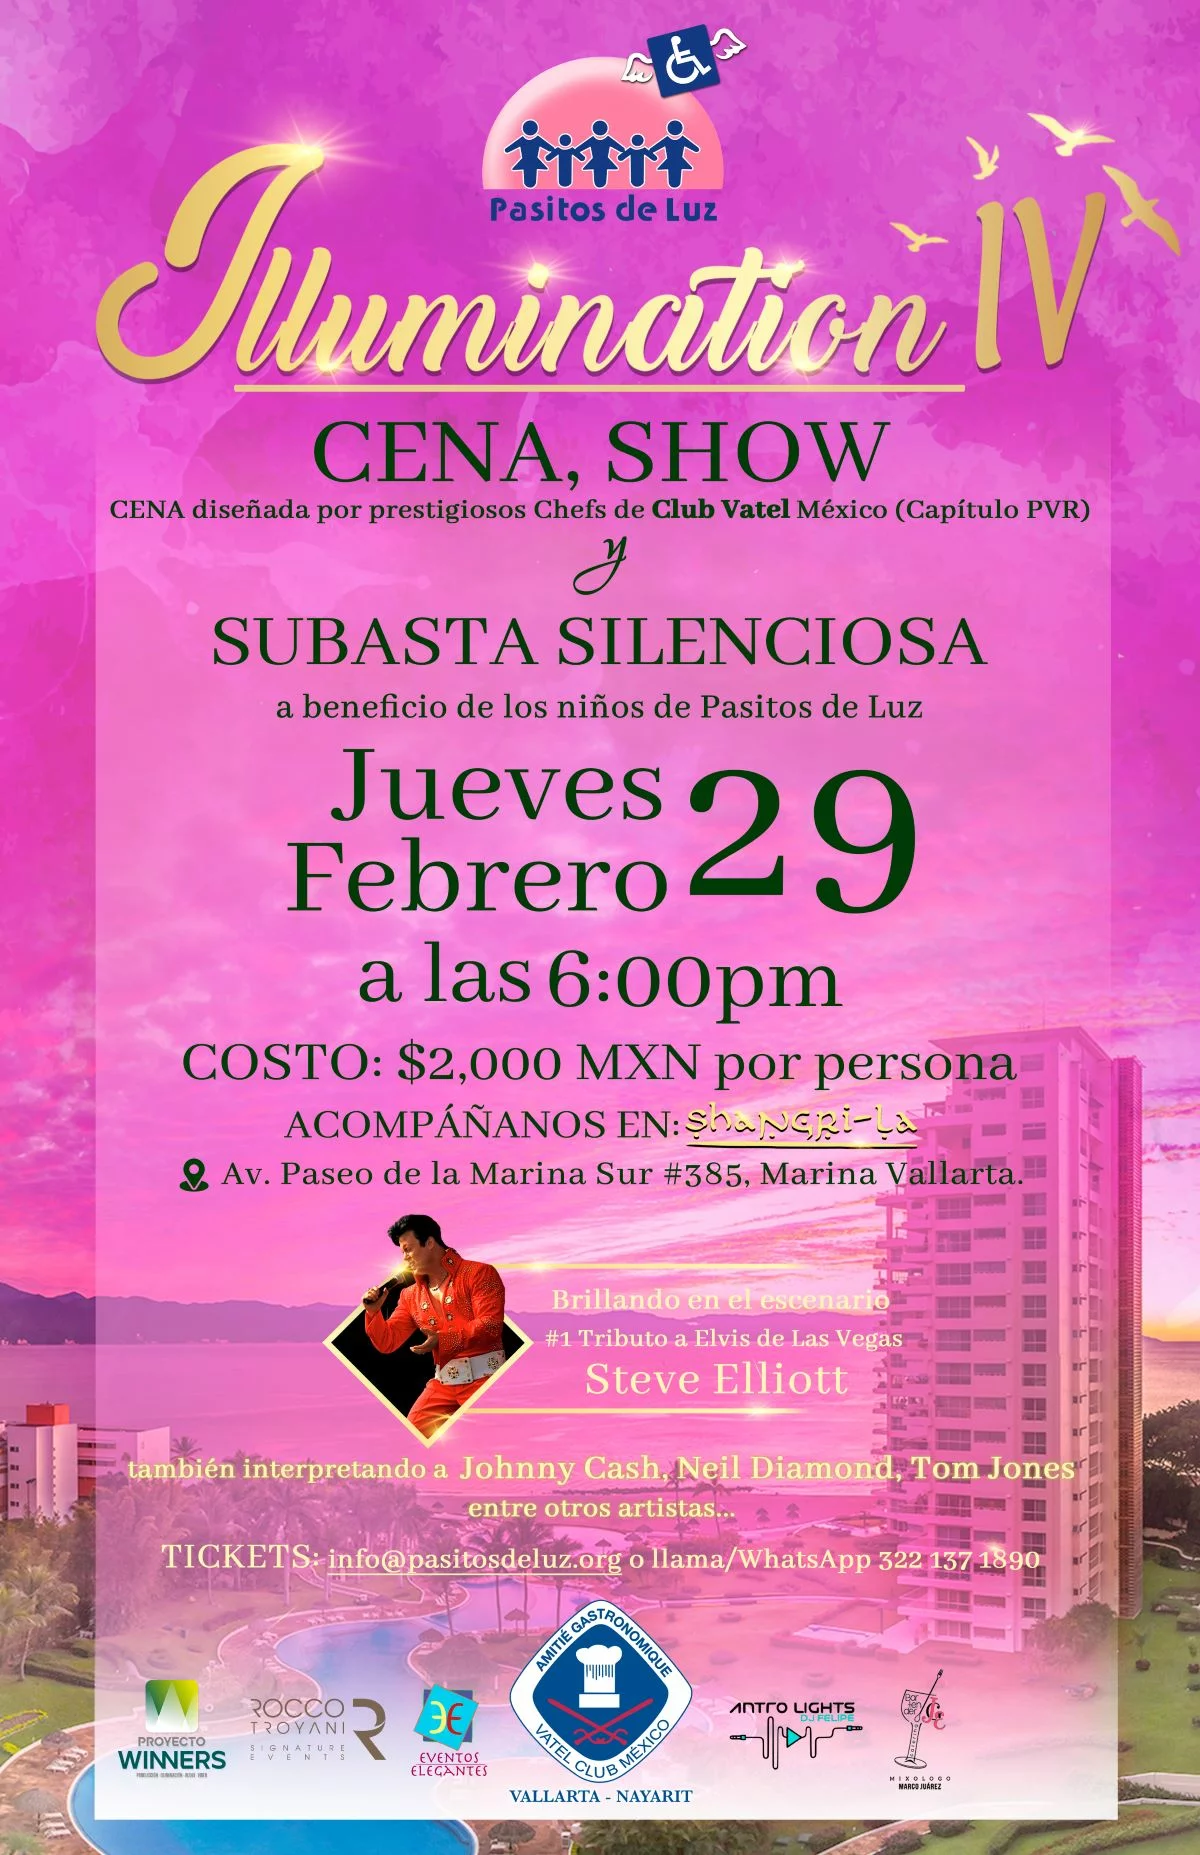 Illumination IV Cena y Show en Shangri-La, 29 de Febrero